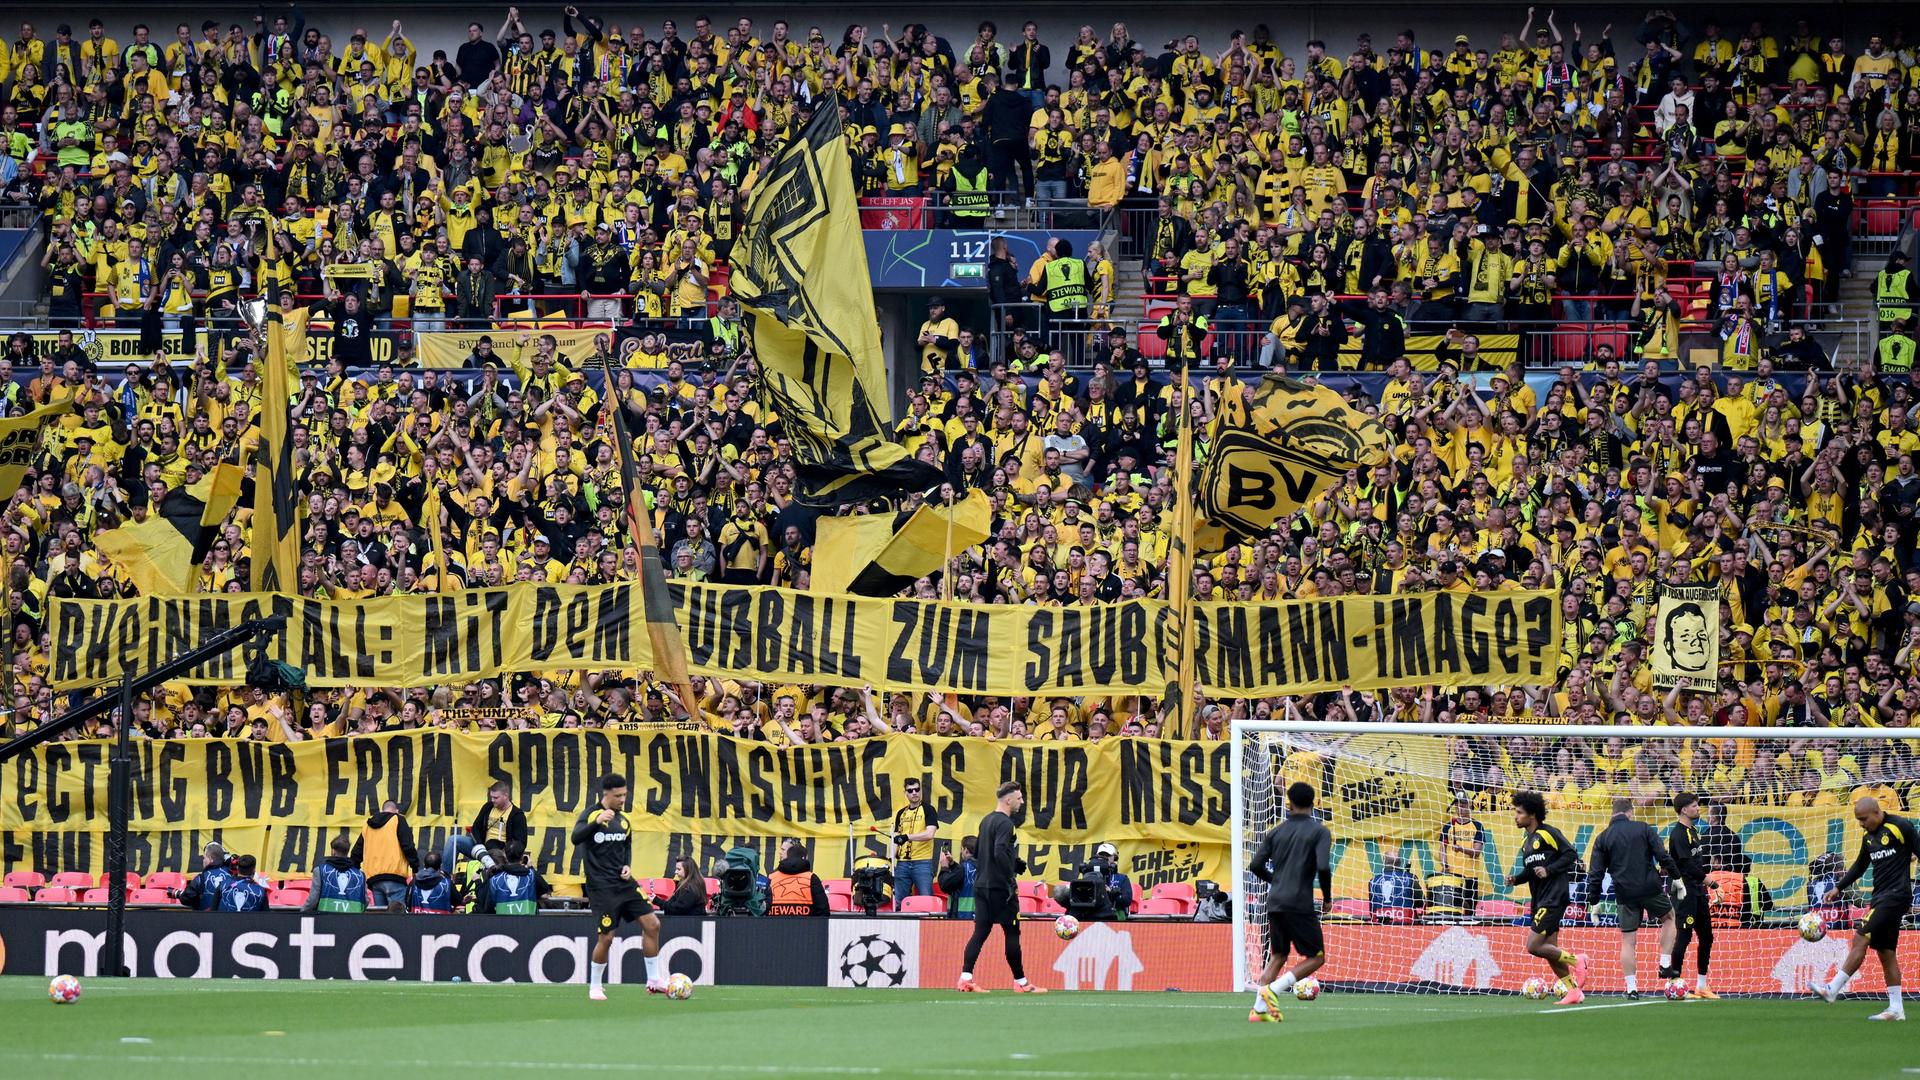 Rheinmetall-Sponsoring: Fans von Borussia Dortmund halten vor dem Championsleague-Finale gegen Real Madrid ein Spruchband "Rheinmetall. Mit dem Fußball zum Saubermann-Image?" in die Höhe.